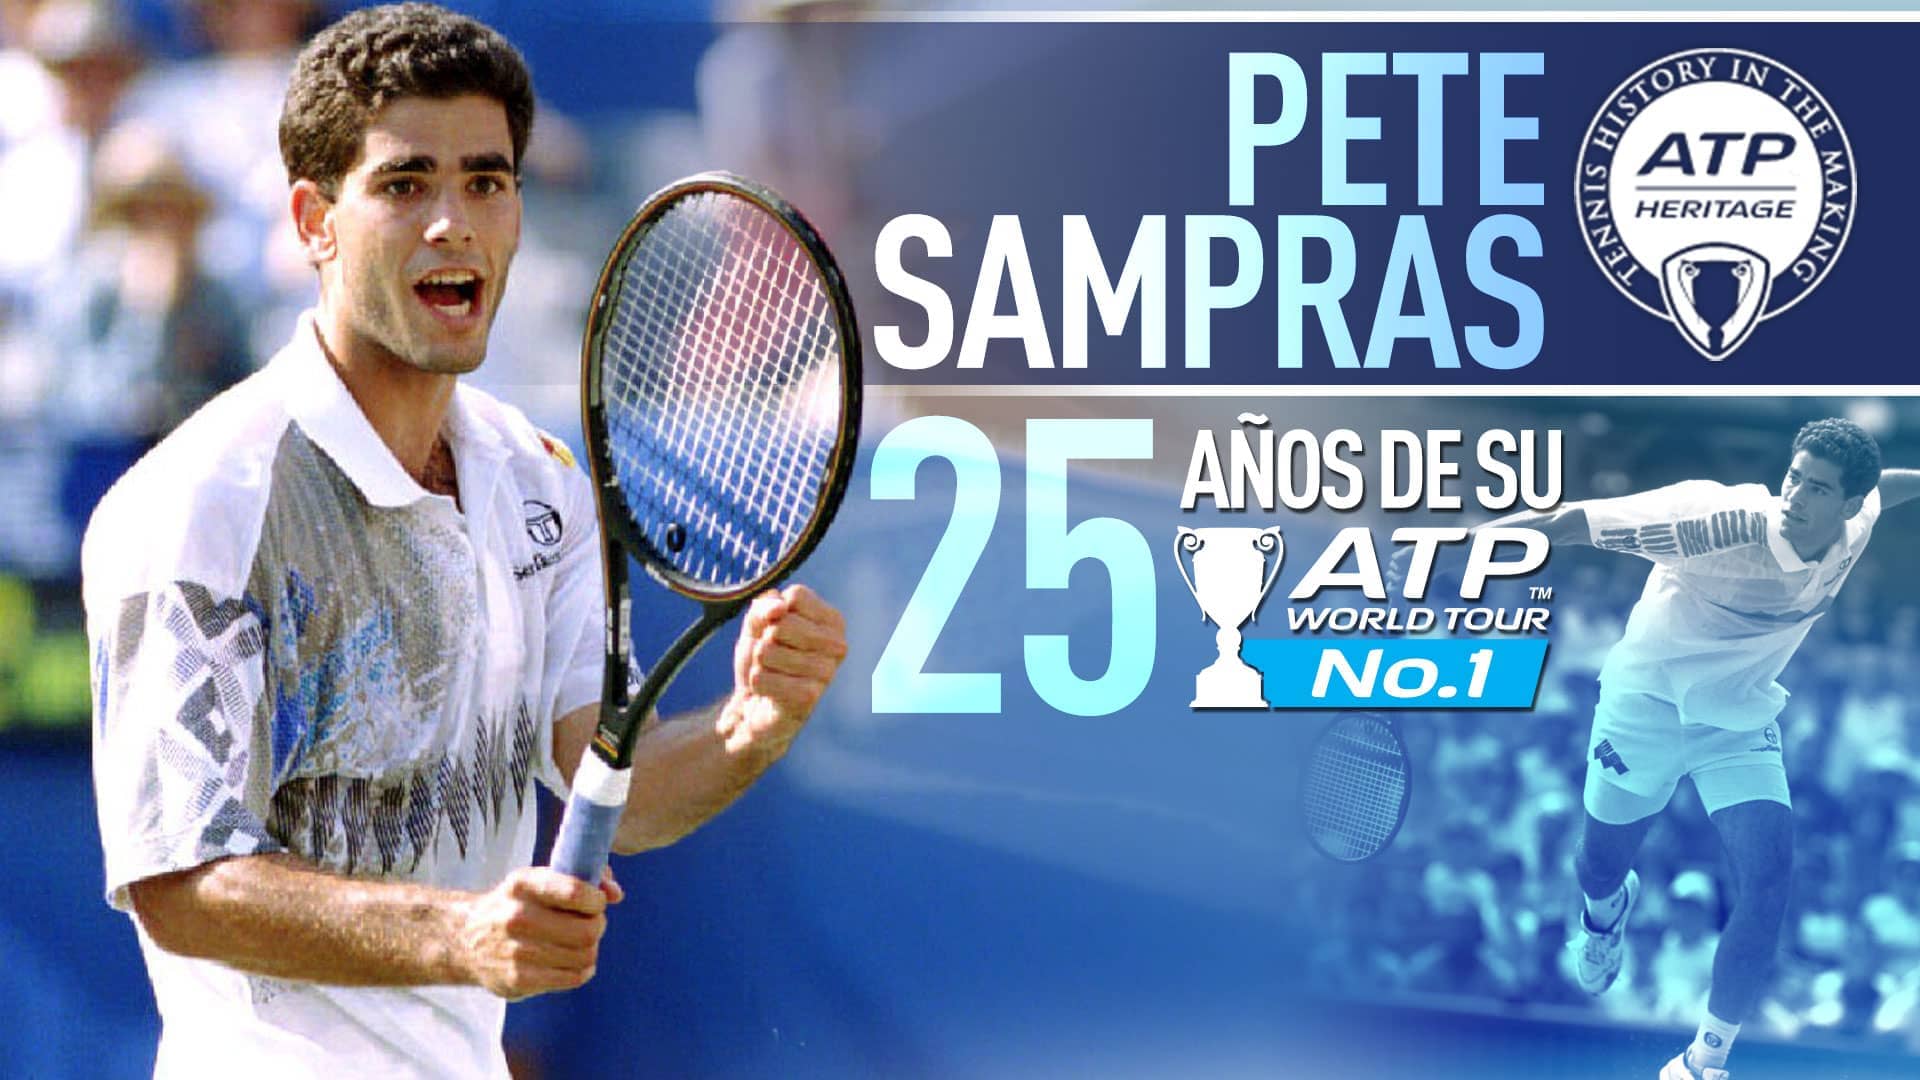 Pete Sampras debutó en el No. 1 el 12 de abril de 1993, la primera de sus 268 semanas en el trono del ATP World Tour.